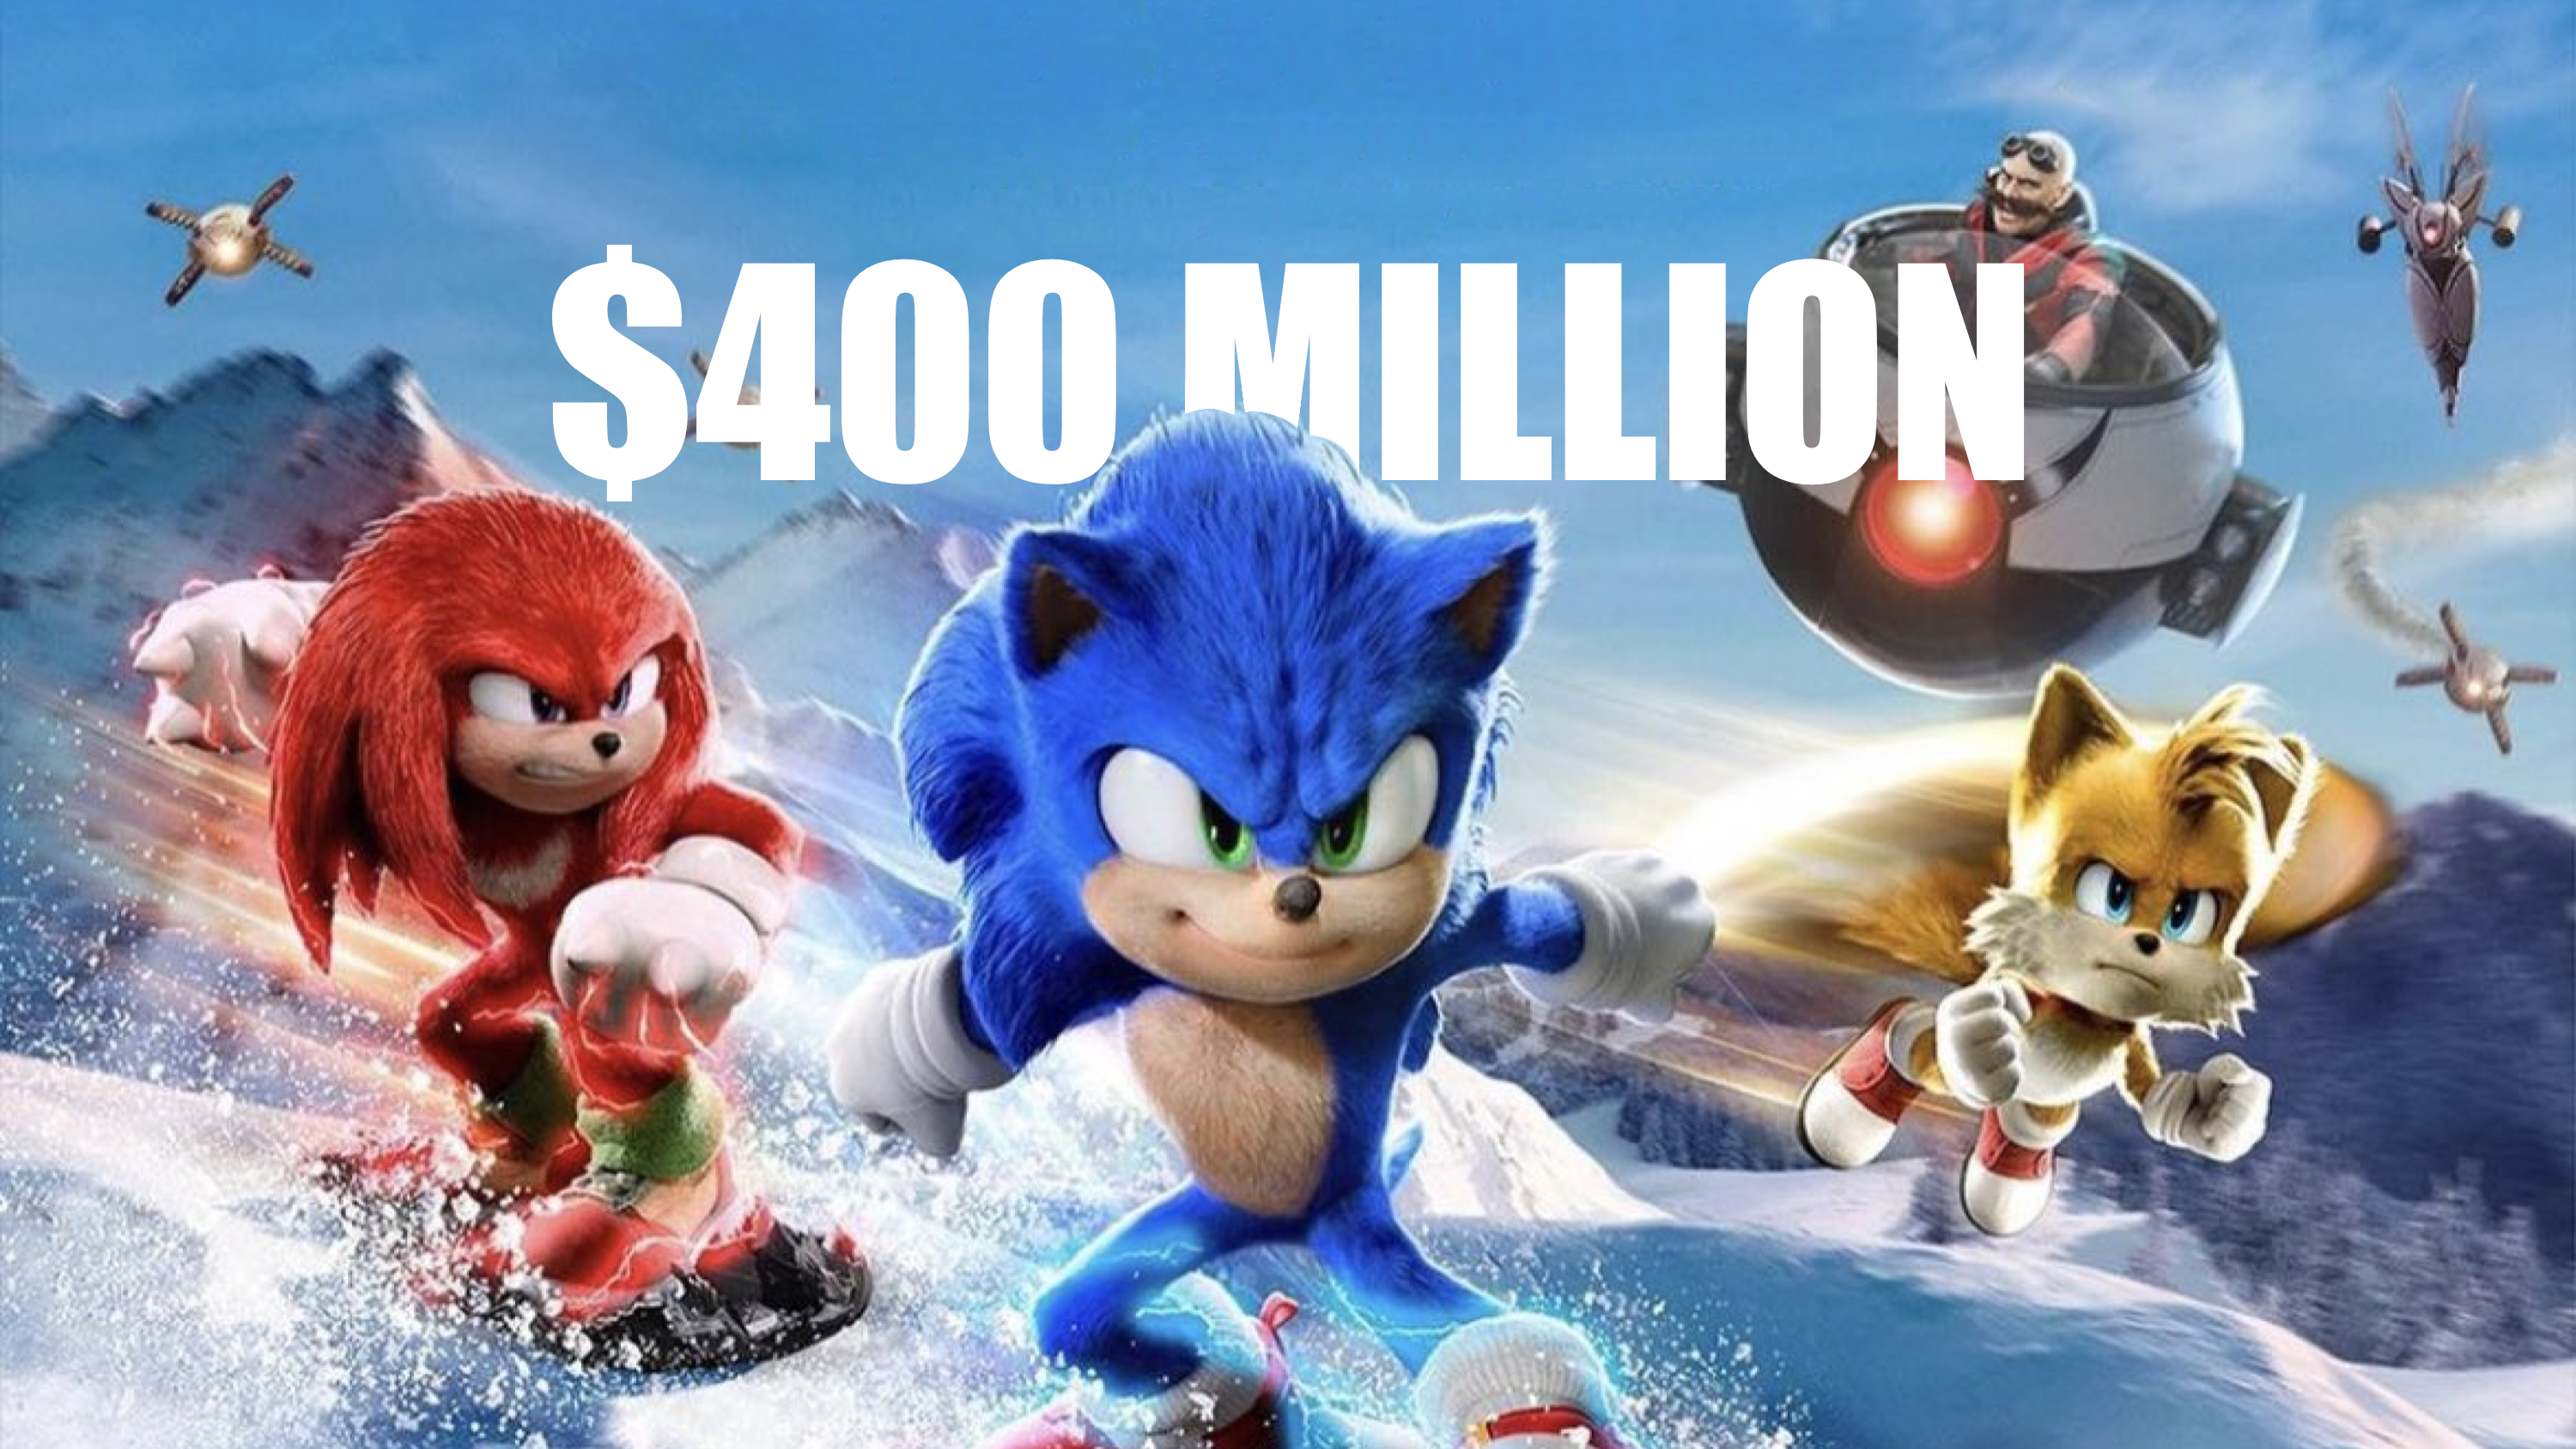 Sonic the Hedgehog 2 surpasses $400 million at Box Office | KitGuru